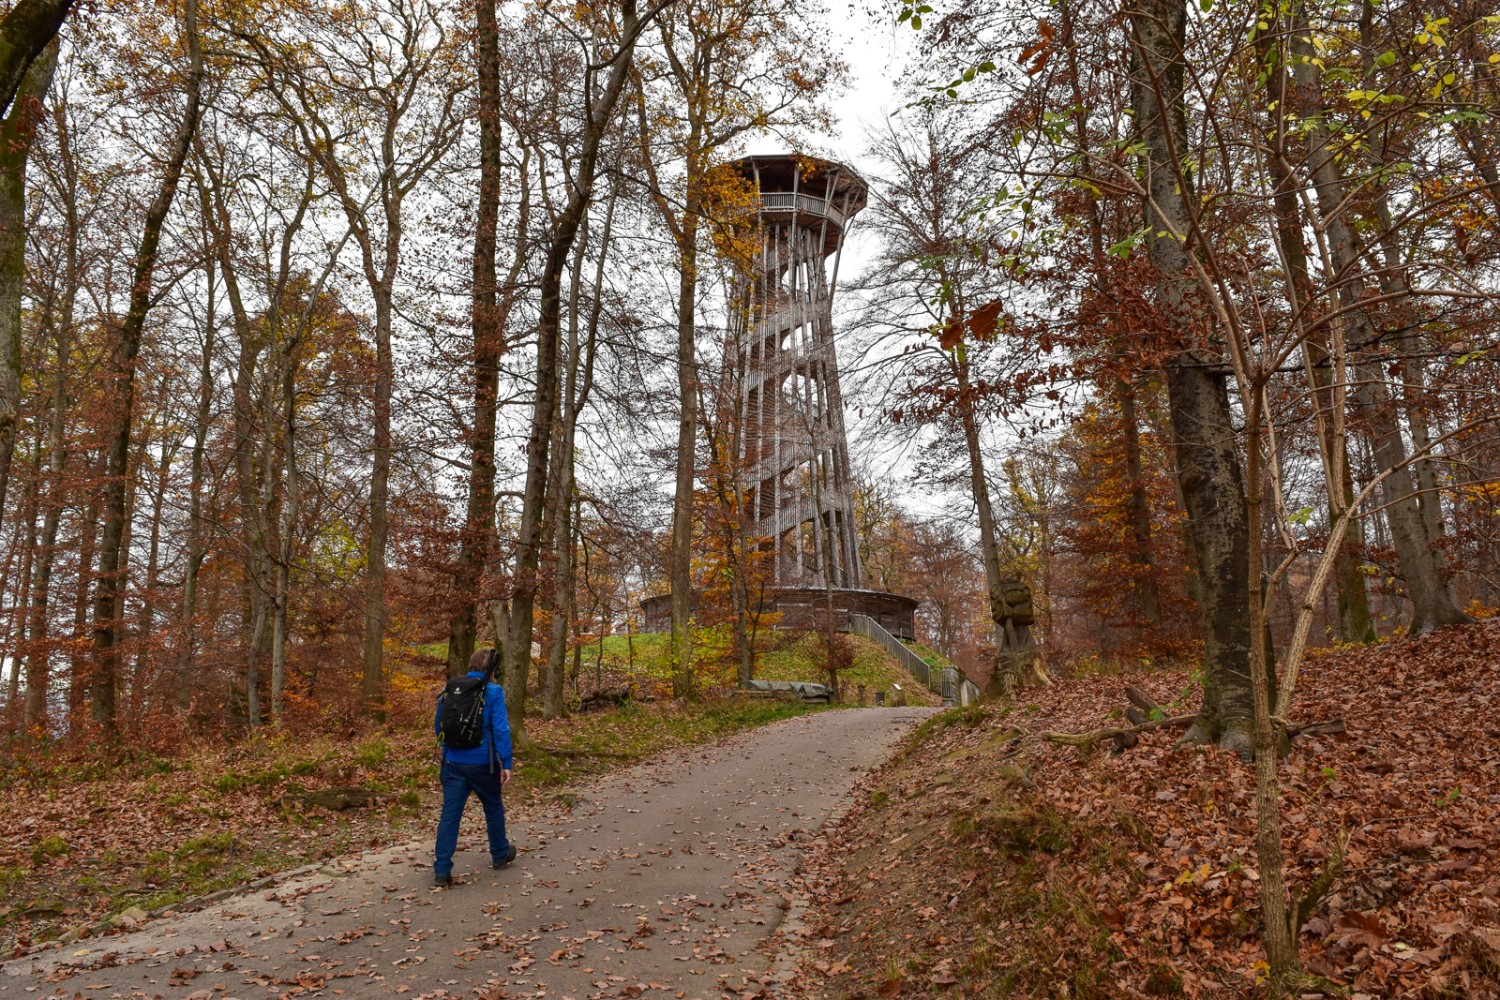 La tour d’observation du parc de Sauvabelin et son escalier en colimaçon. Photo: Nathalie Stöckli